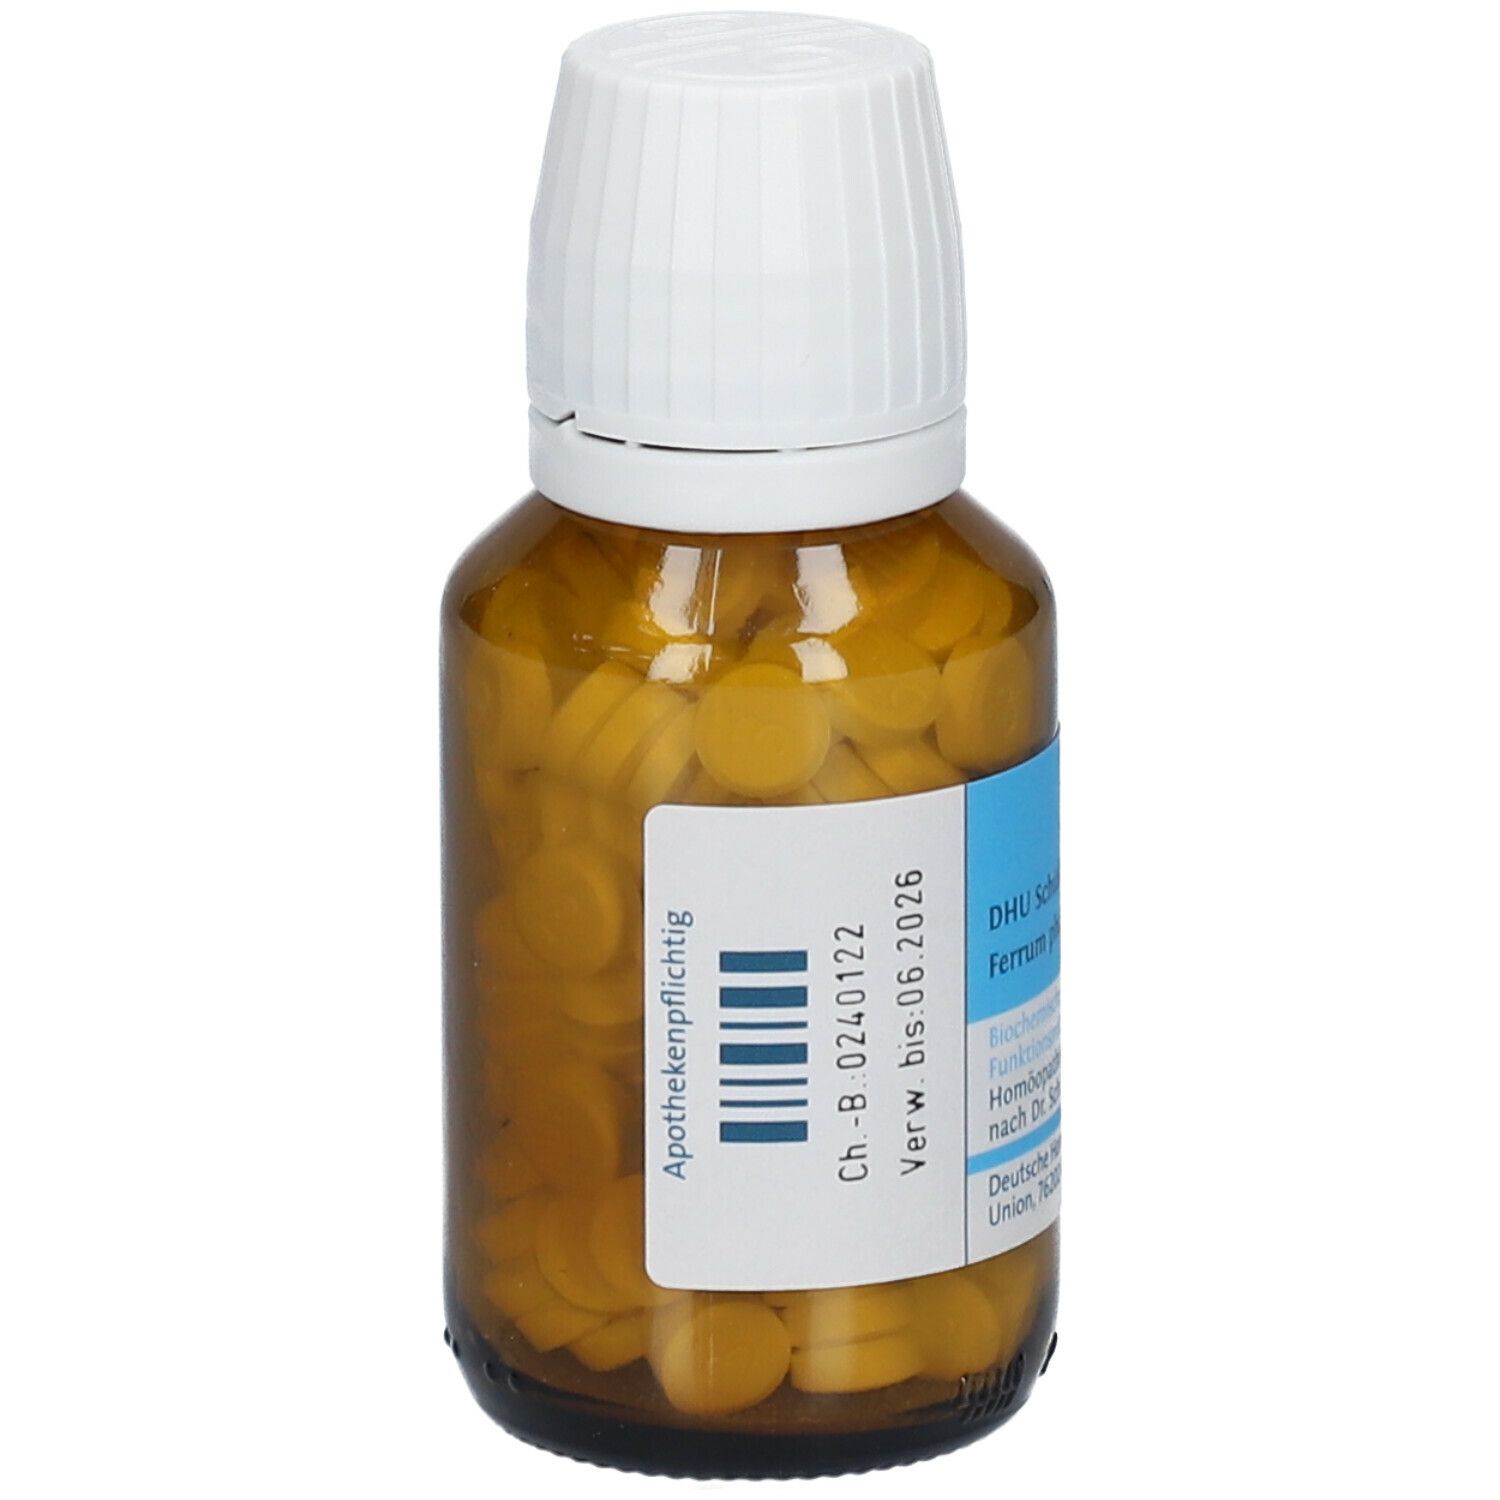 DHU Schüßler-Salz Nr. 3® Ferrum phosphoricum D6